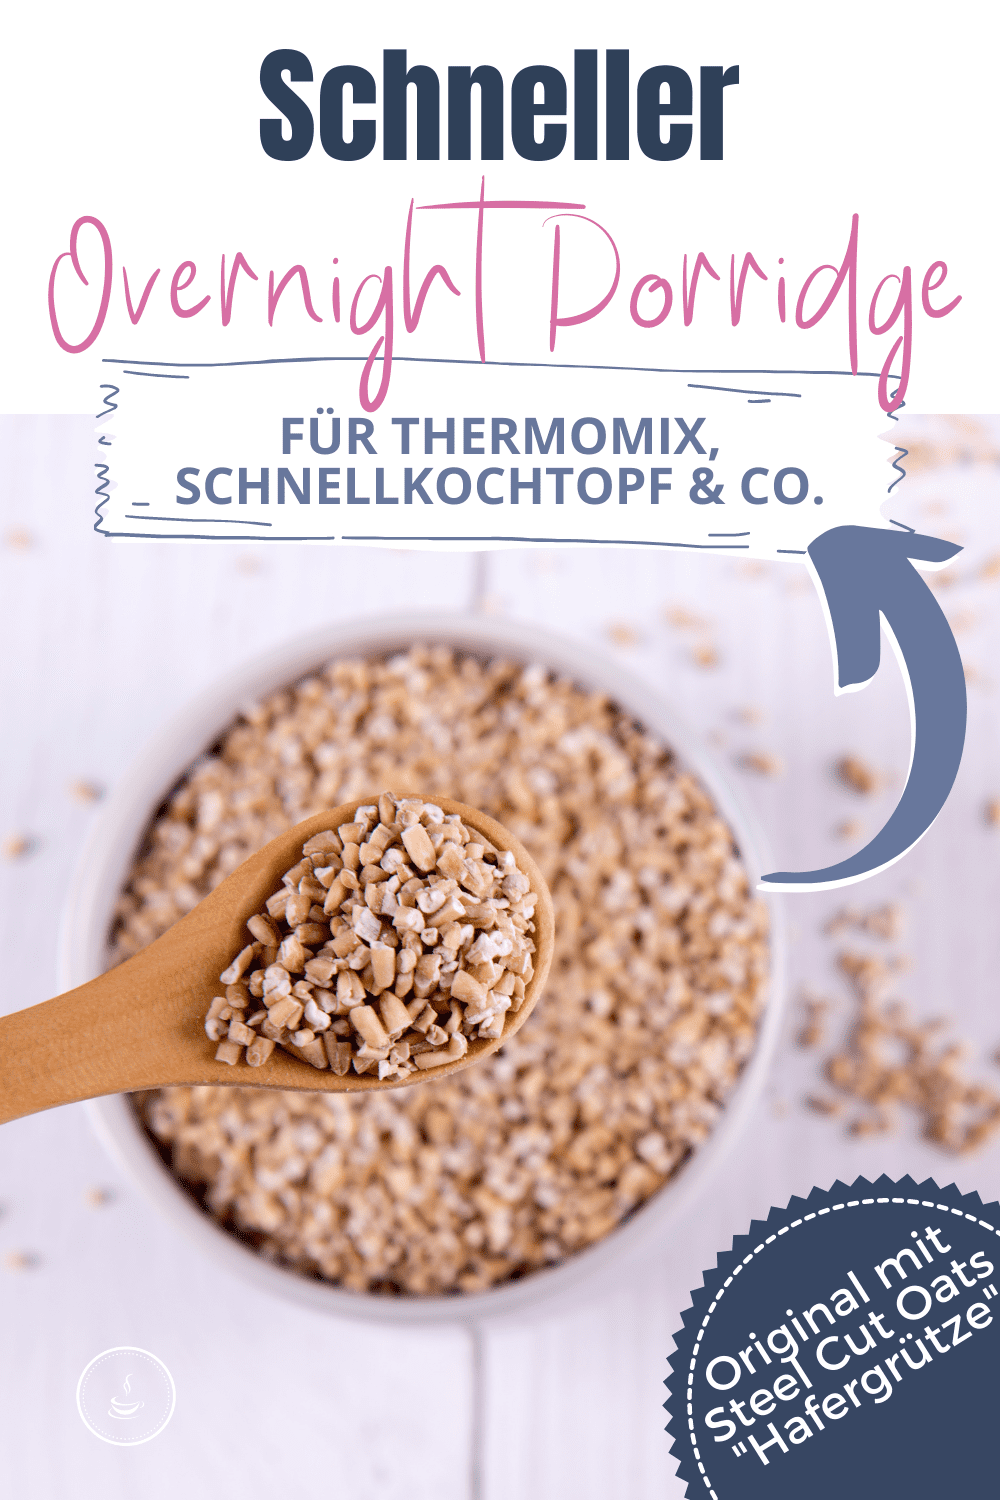 Schneller Porridge für Thermomix, Schnellkochtopf & Co. - Bild 4